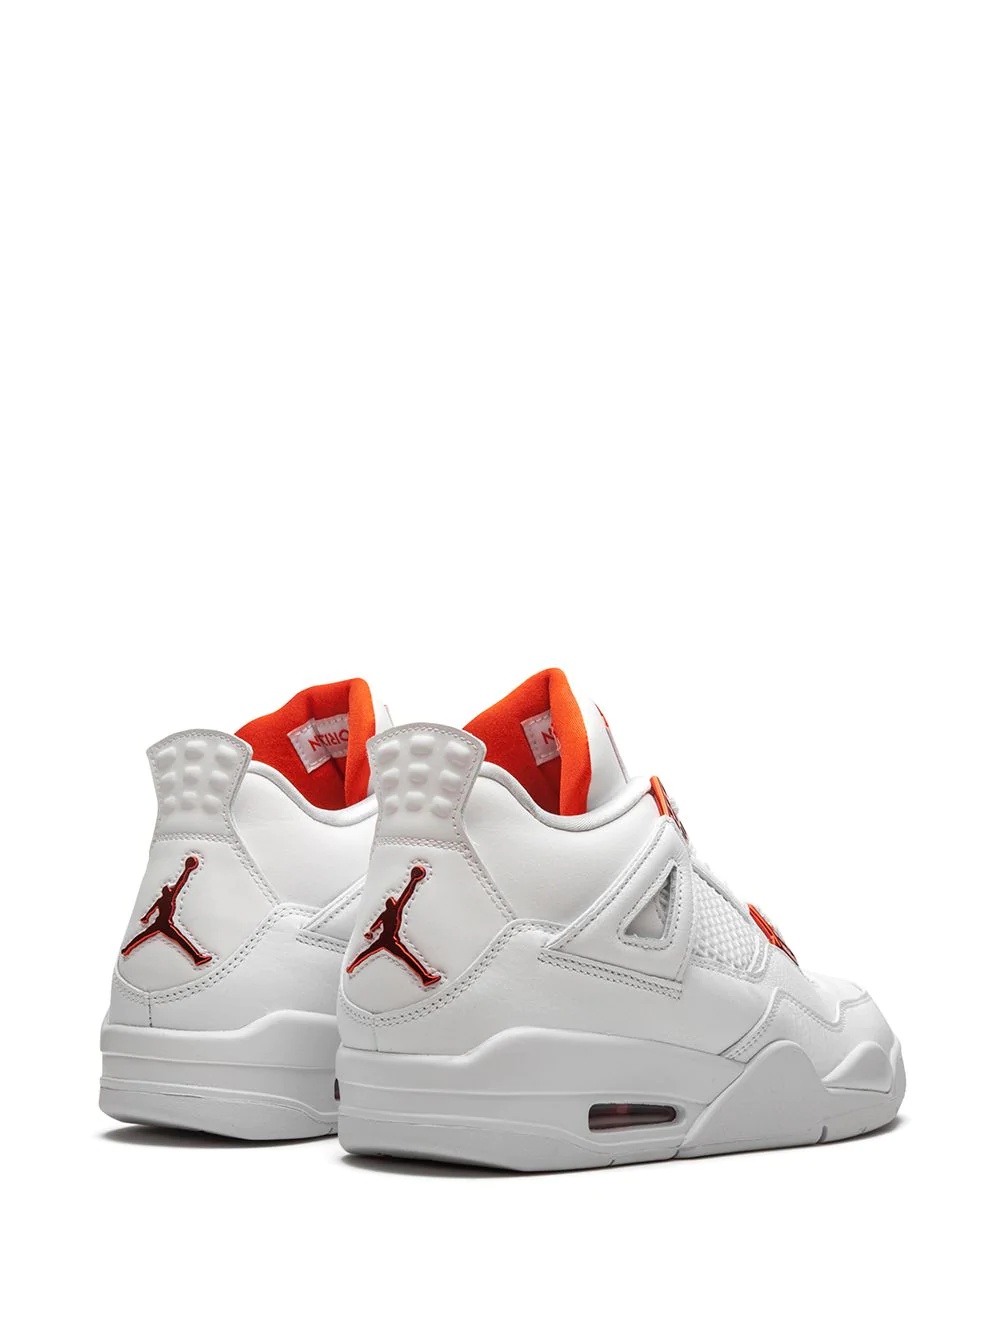 Air Jordan 4 Retro "Metallic Pack - Orange" sneakers - 3